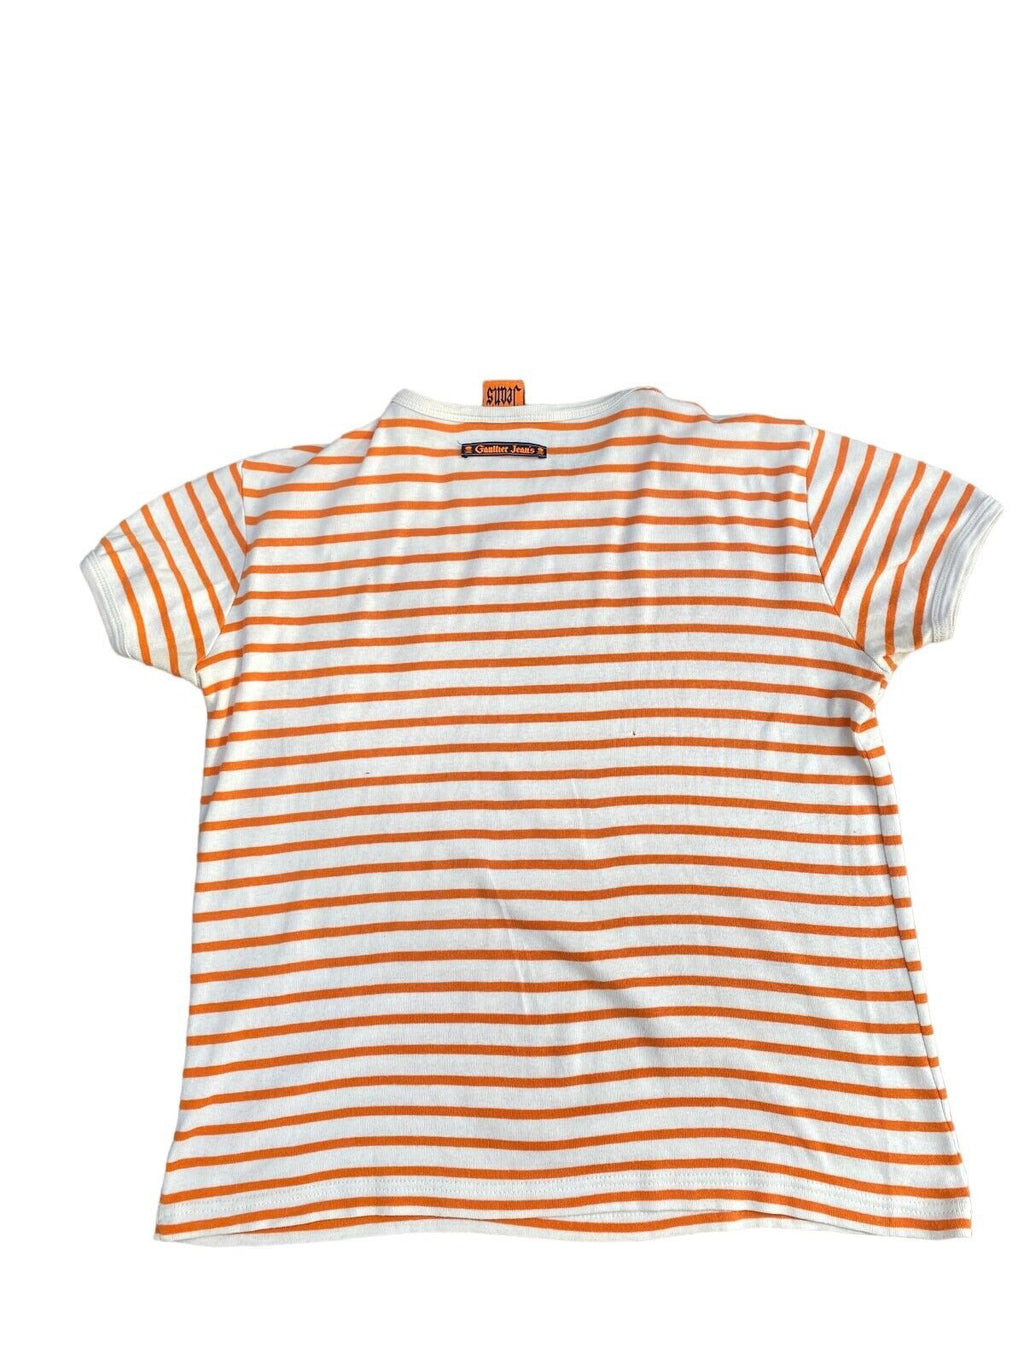 Vintage Striped T-shirt Size Men L fits M  Unisex